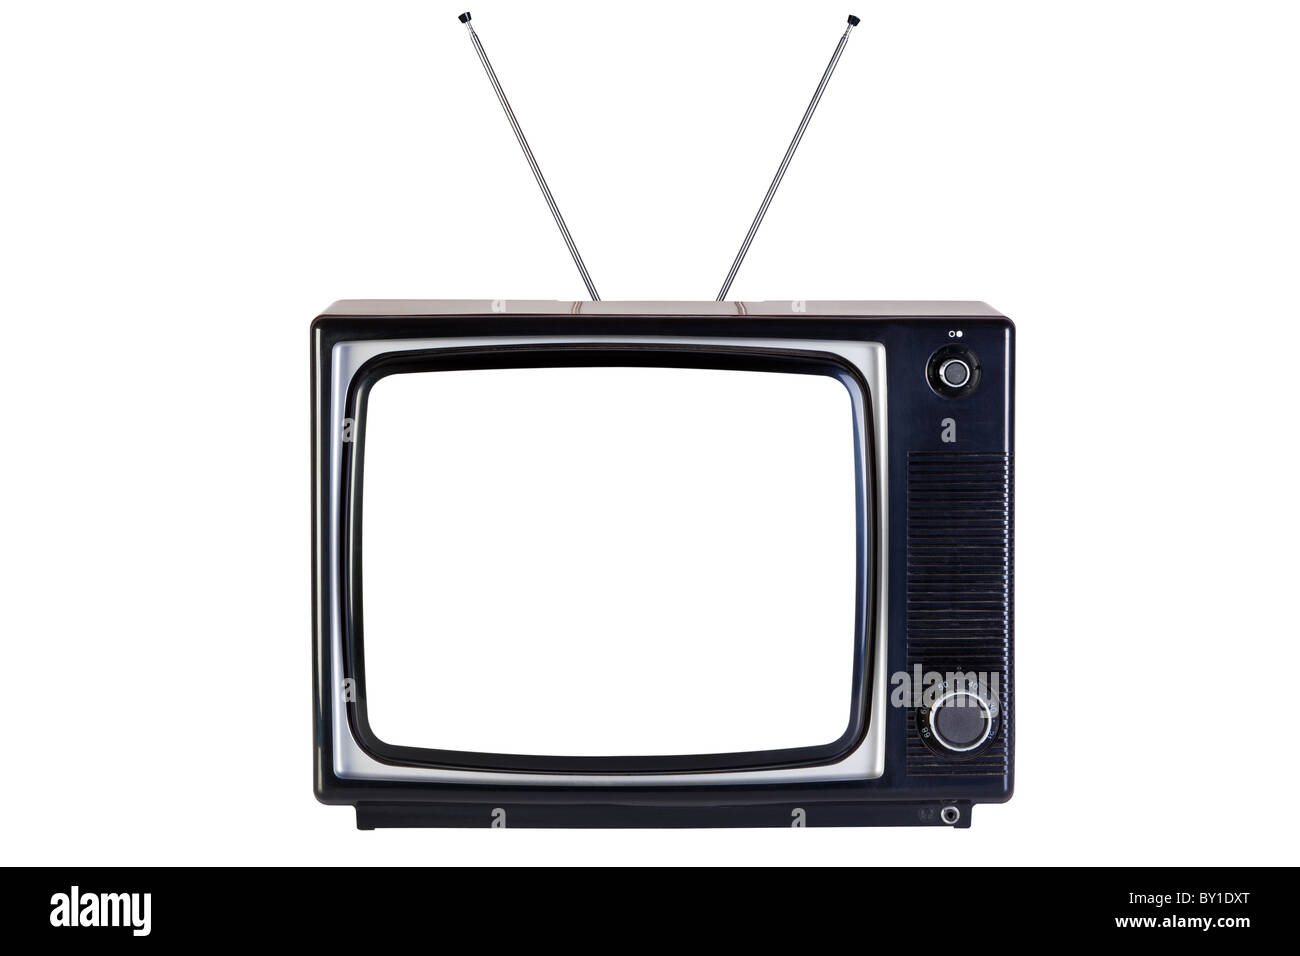 Ancien retro noir et blanc de la télévision, isolé sur un fond blanc, avec des chemins de détourage pour la télévision et l'écran vide. Banque D'Images